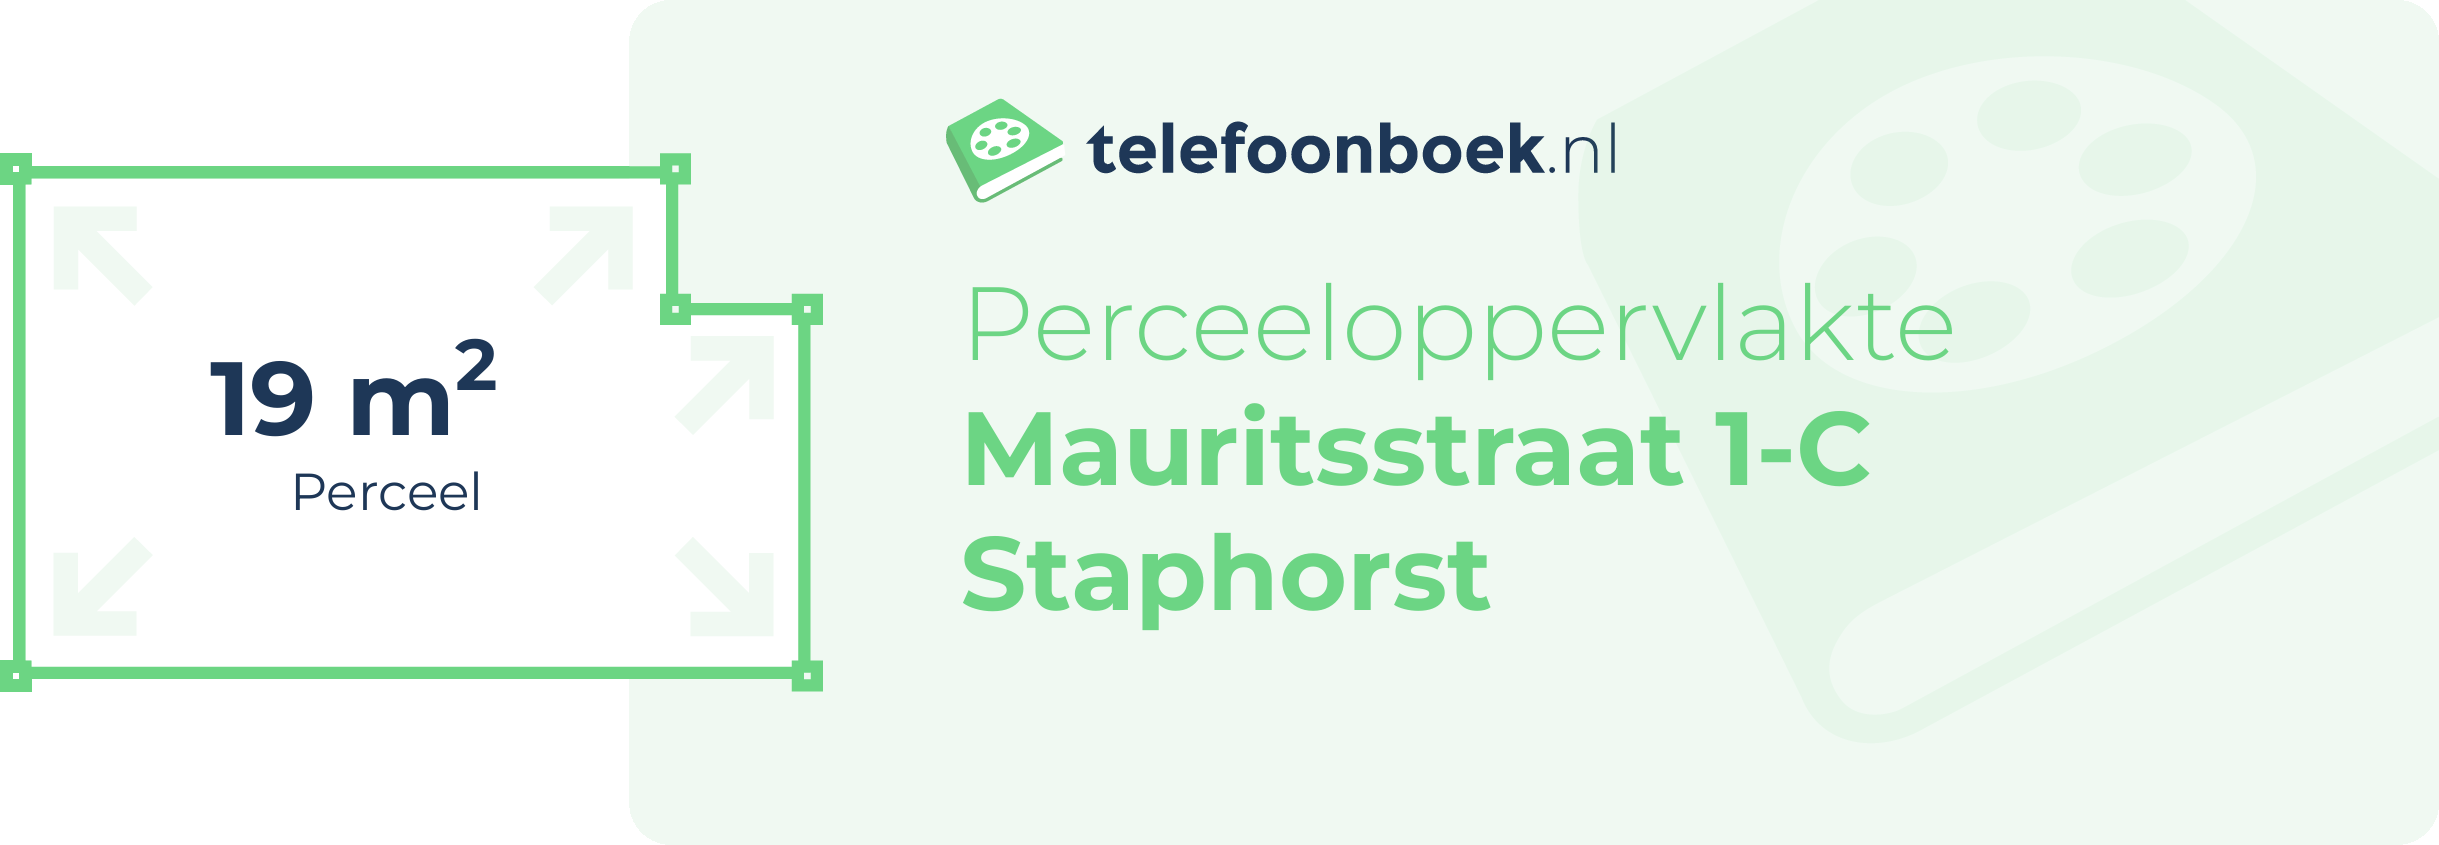 Perceeloppervlakte Mauritsstraat 1-C Staphorst